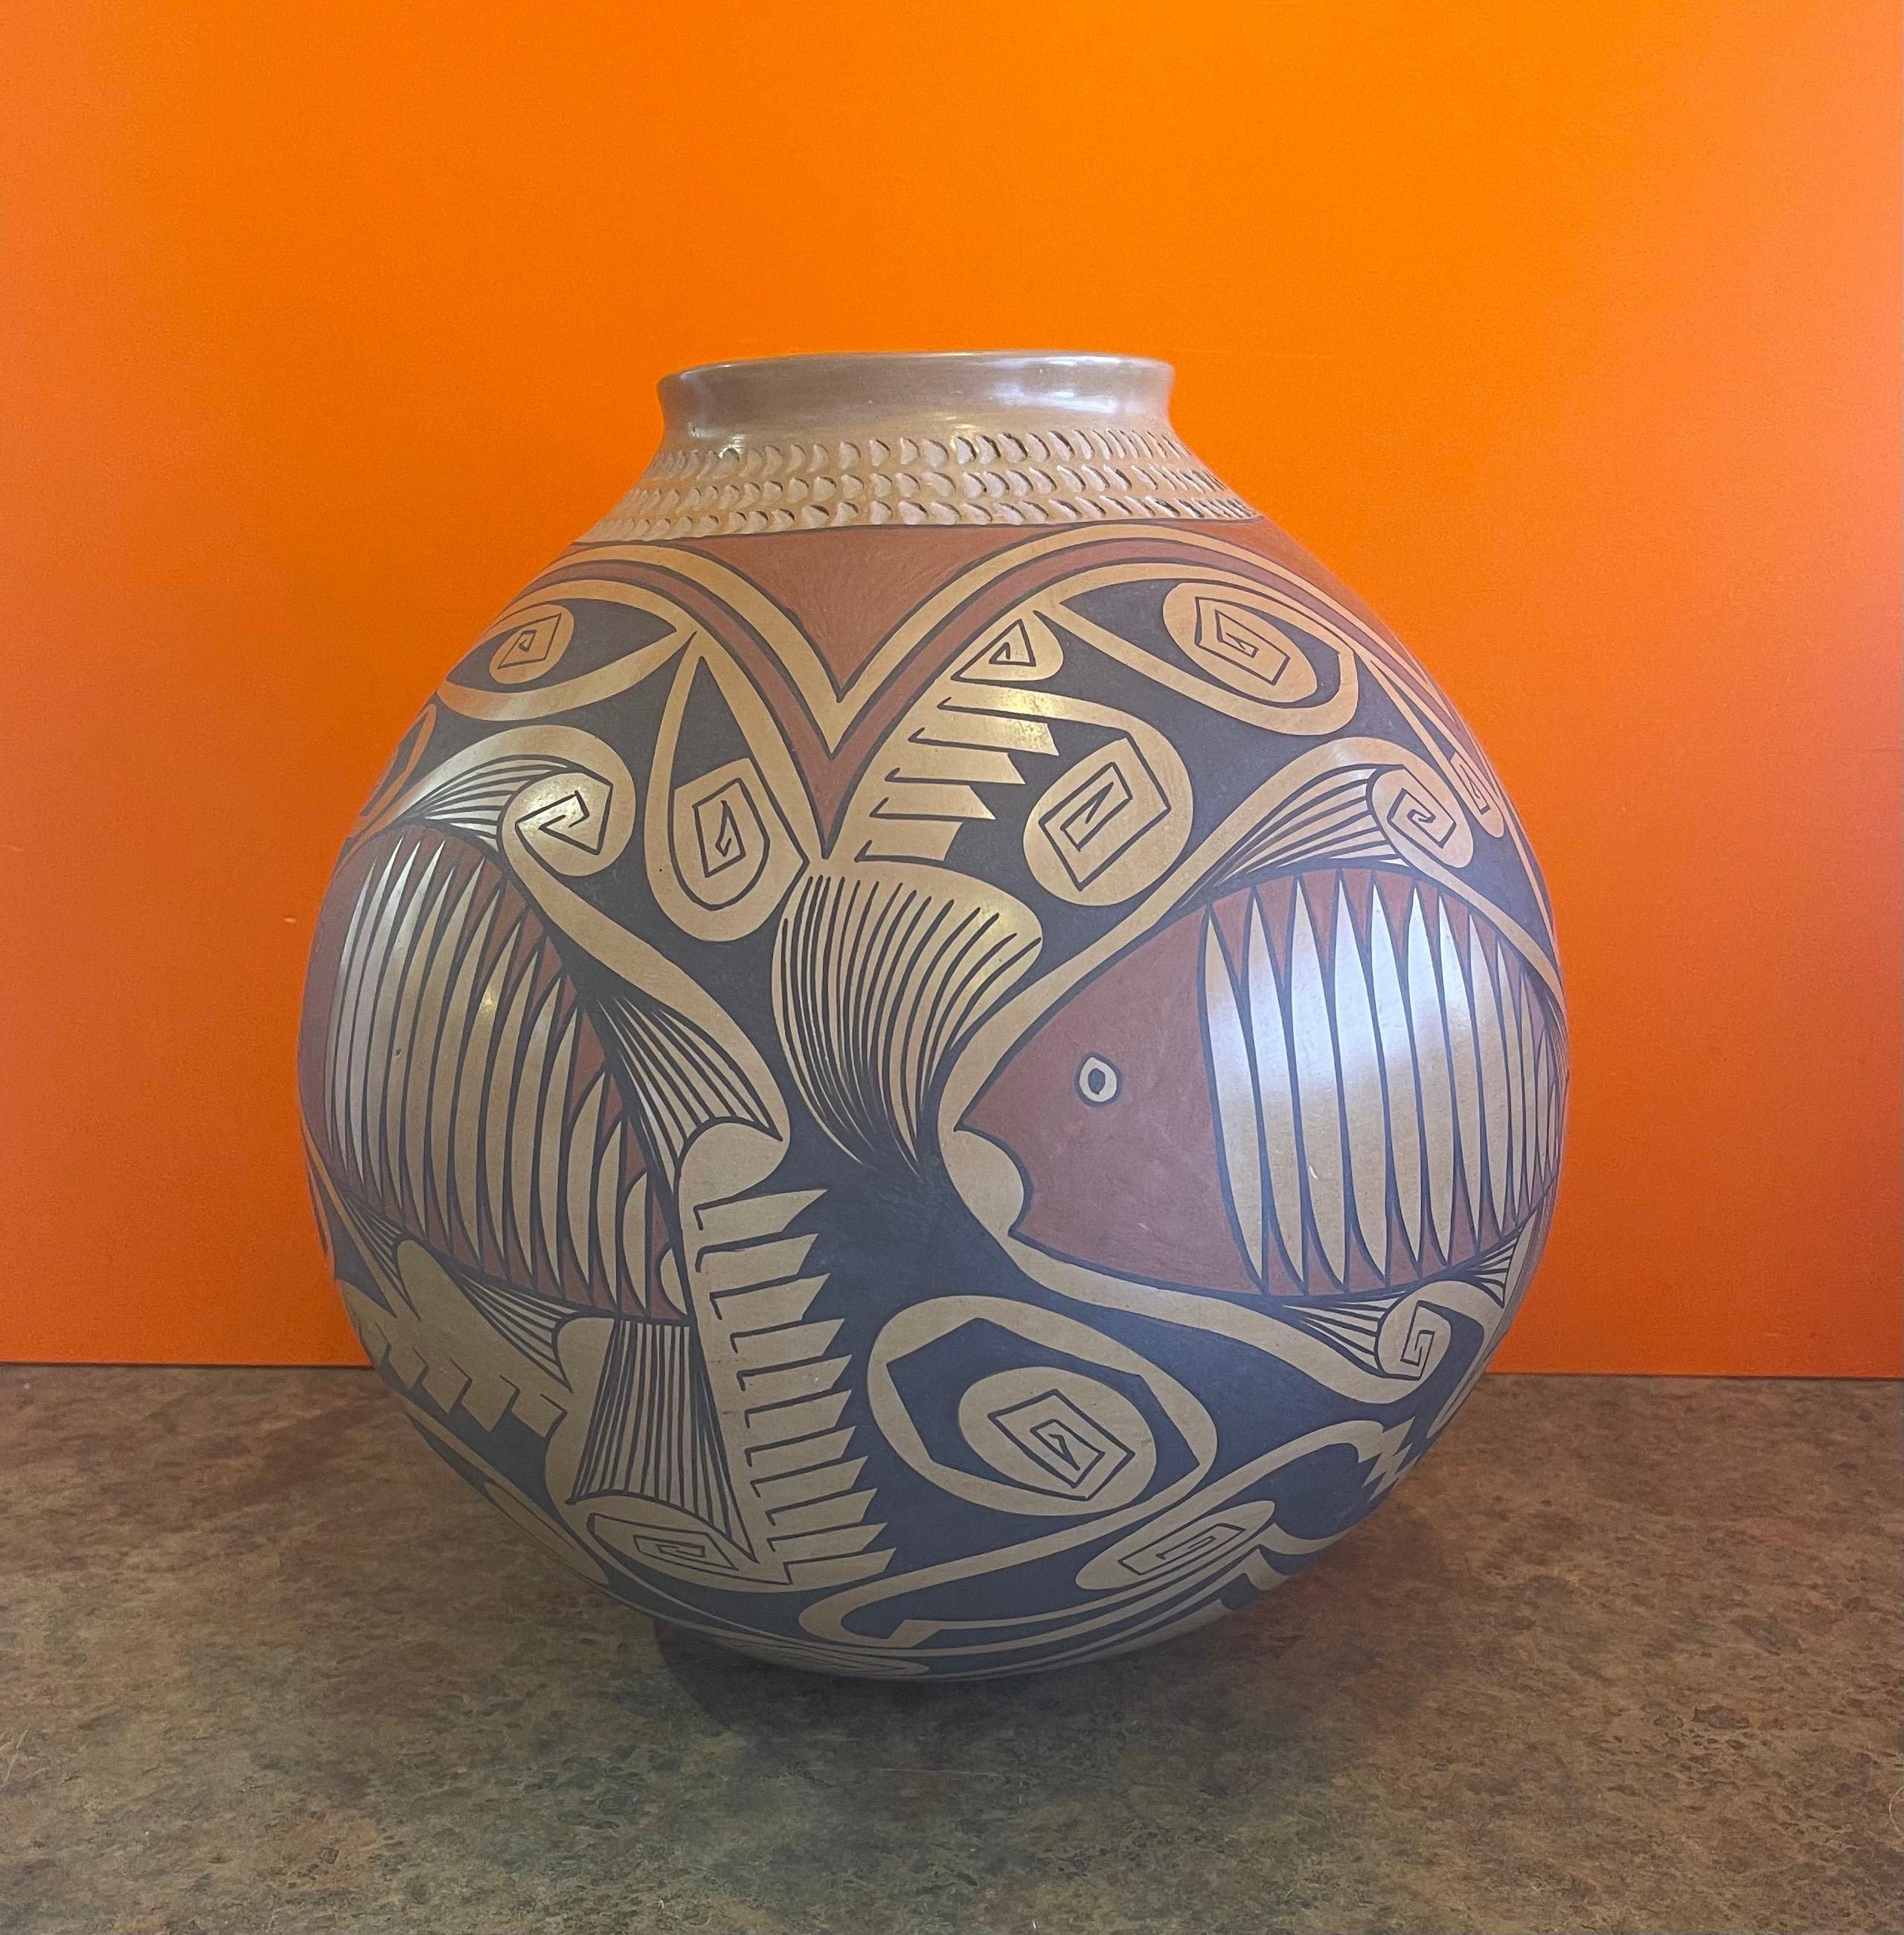 Magnifique récipient en poterie polychrome Mata Ortiz massif tourné à la main avec motif de poisson par Gloria Hernandez, vers les années 1990. Cette pièce exquise en argile naturellement brune présente un motif unique de poisson noir et brun. Ce